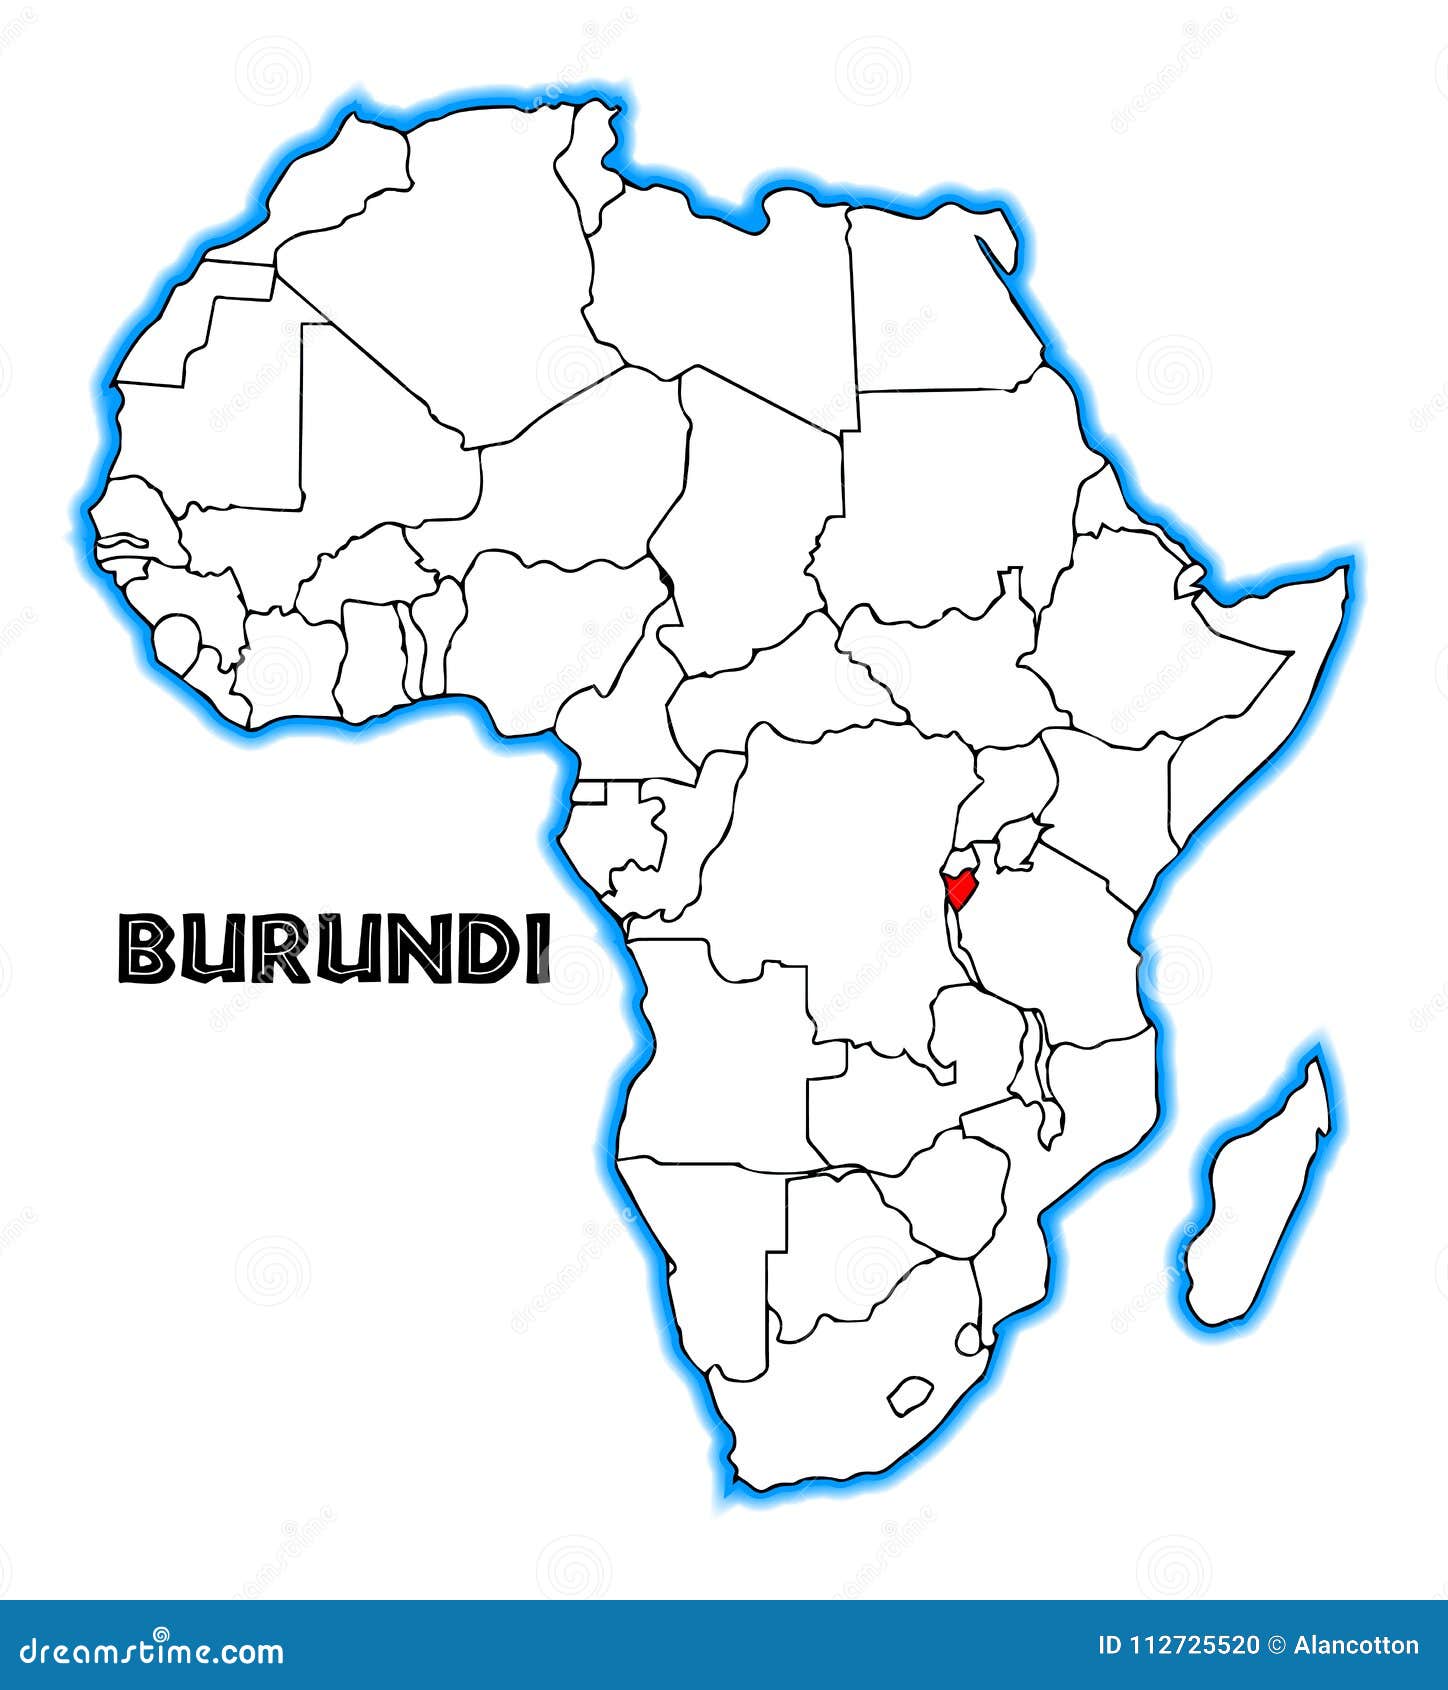 burundi carte afrique Burundi Africa Map Stock Vector Illustration Of Graphic 112725520 burundi carte afrique